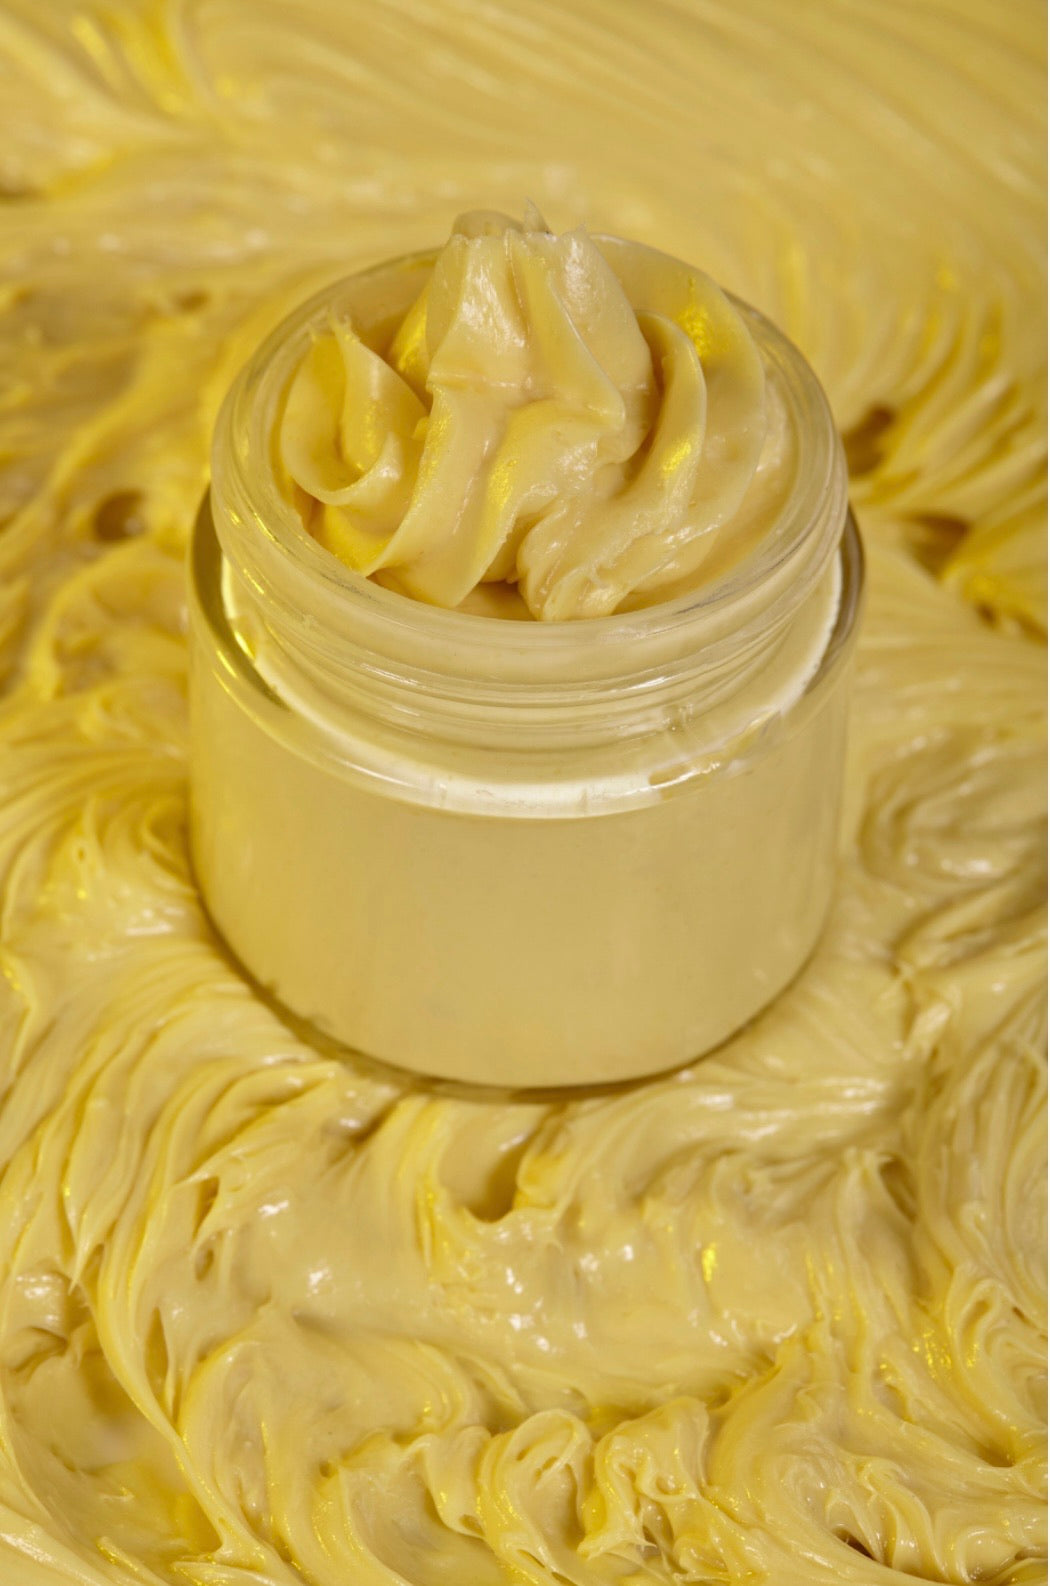 Unisex Skin-Healing & Enhancing Butter